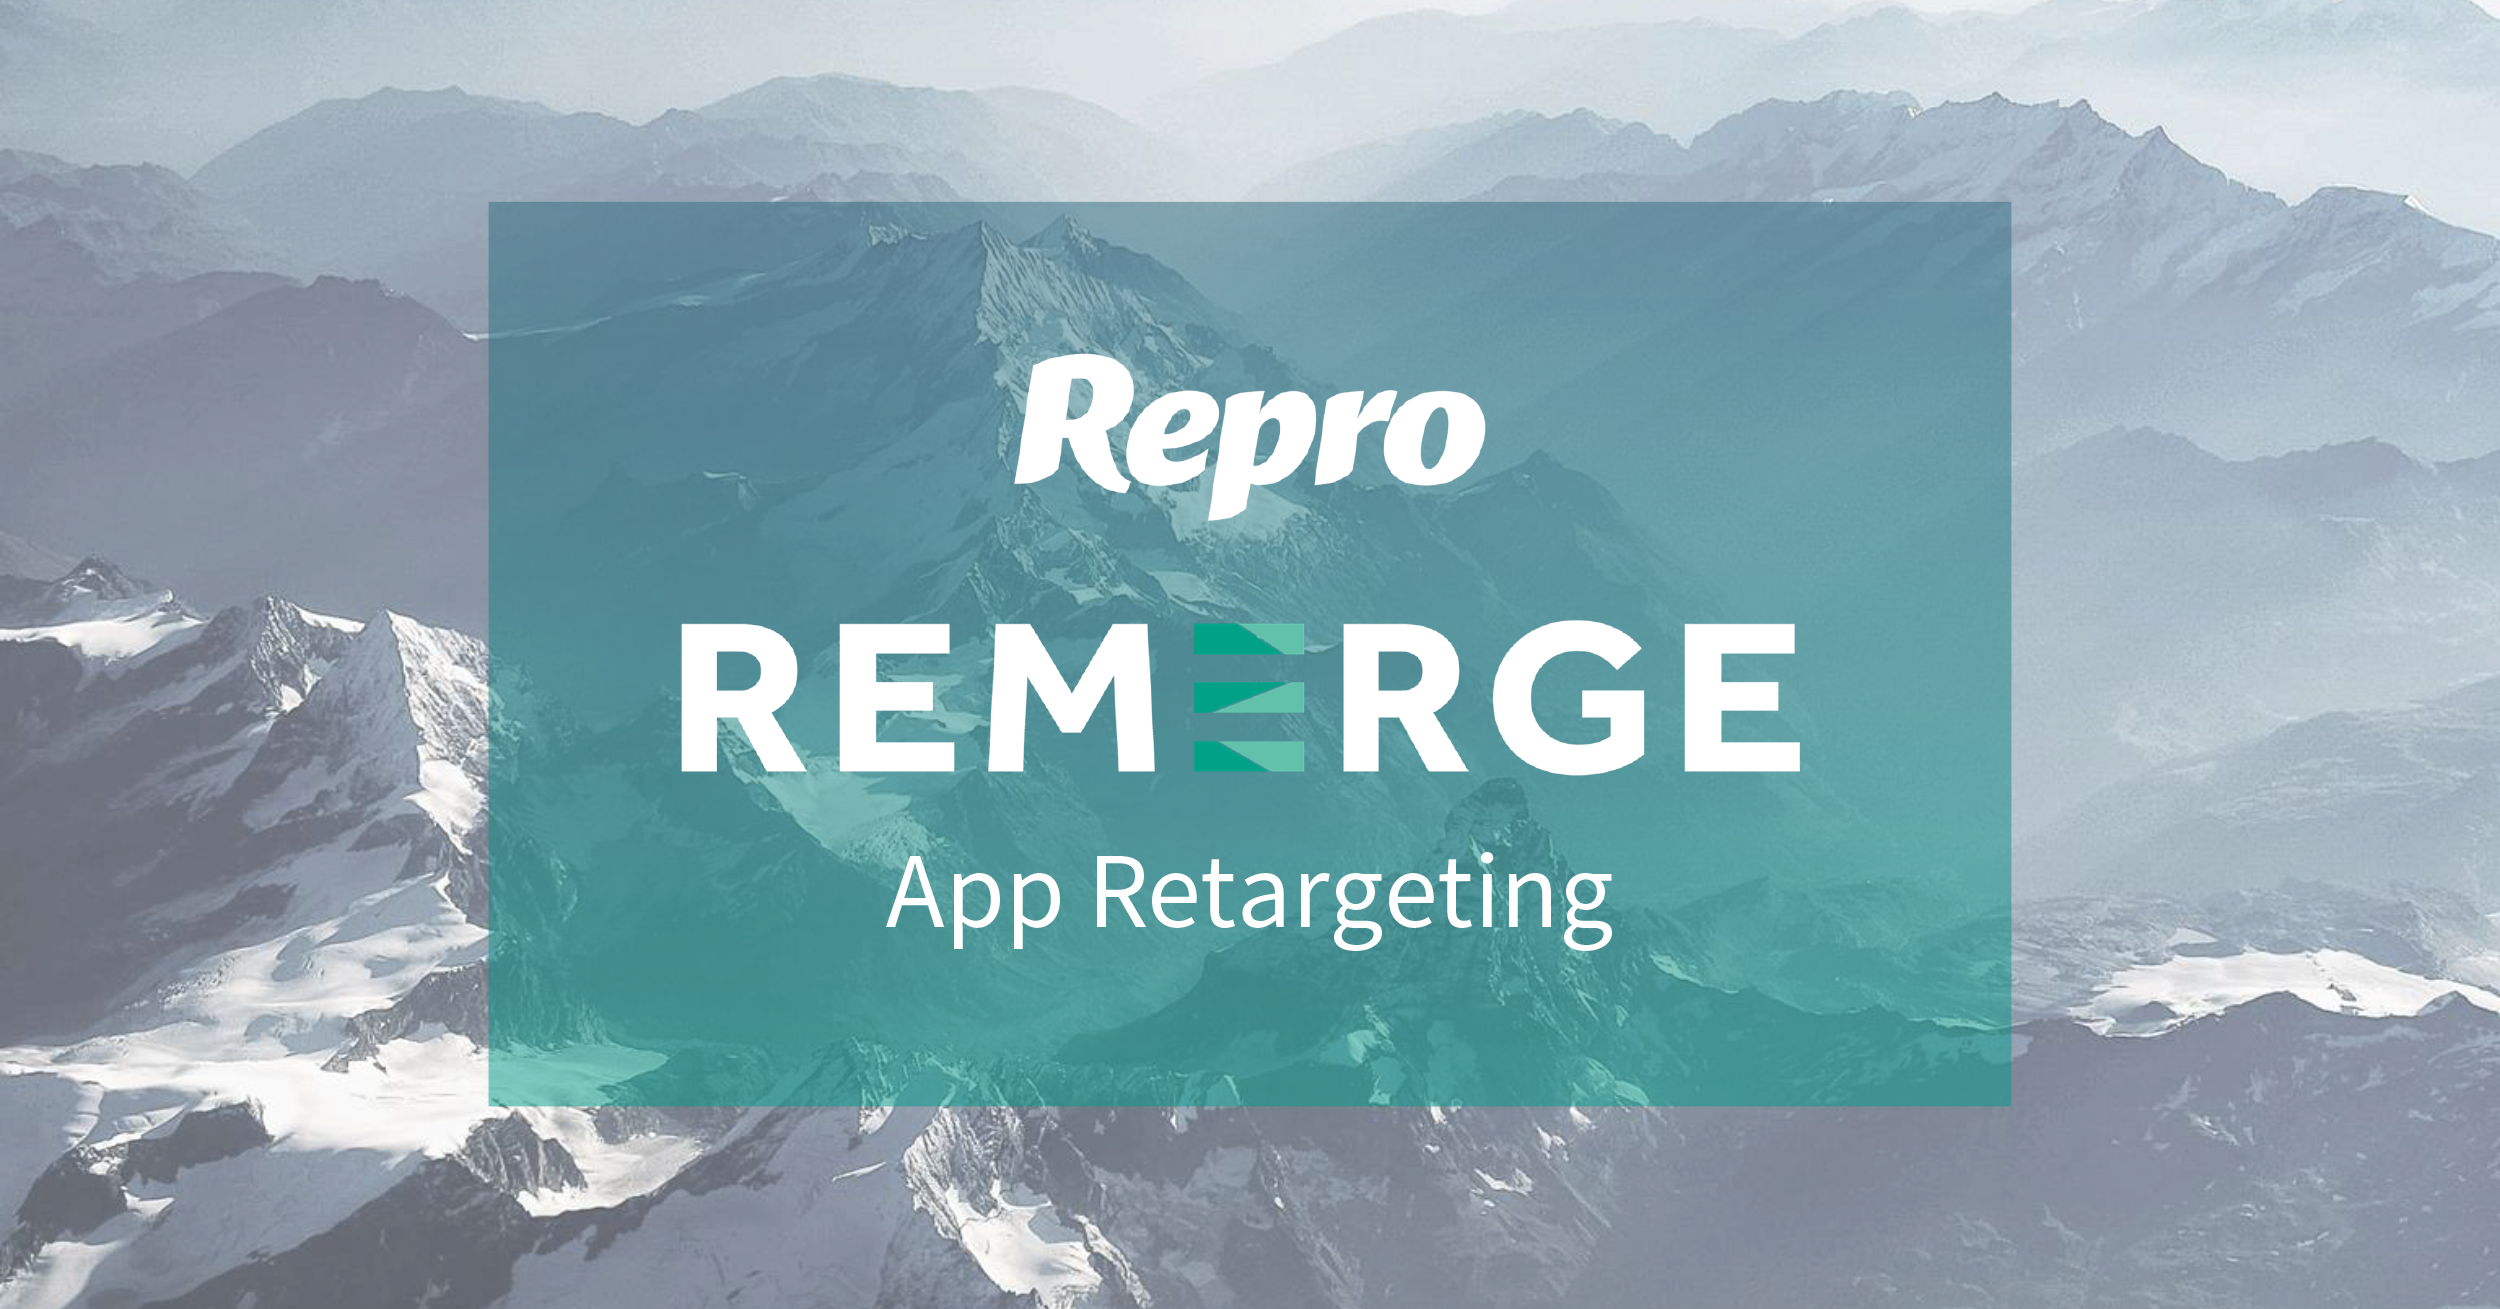 REMERGE App Retargeting